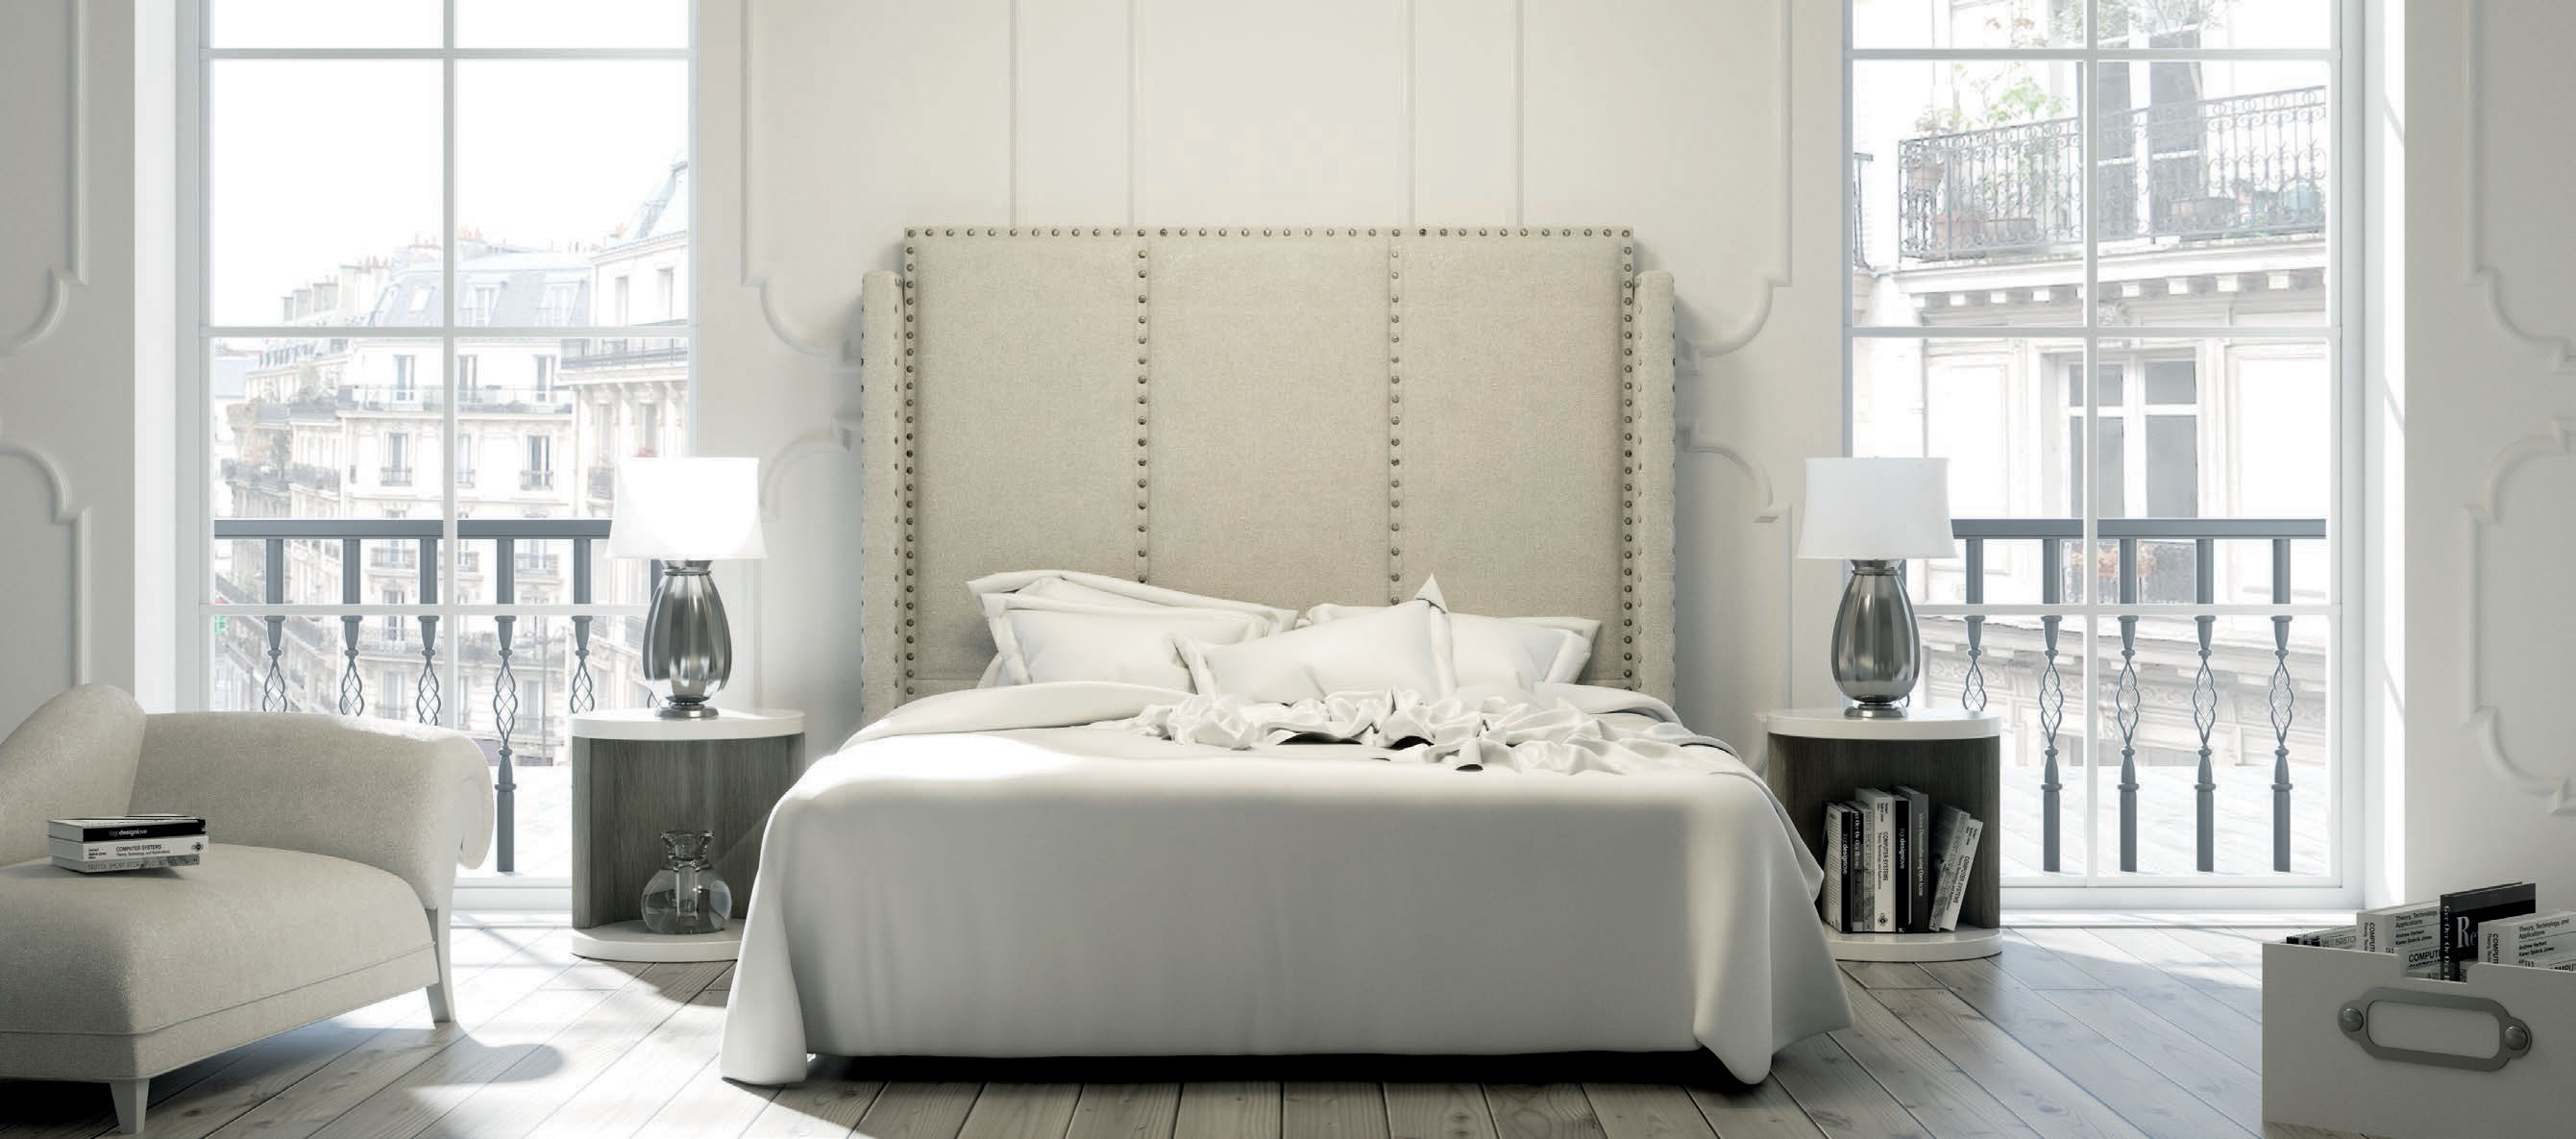 Brands Franco Furniture Avanty Bedrooms, Spain DOR 152